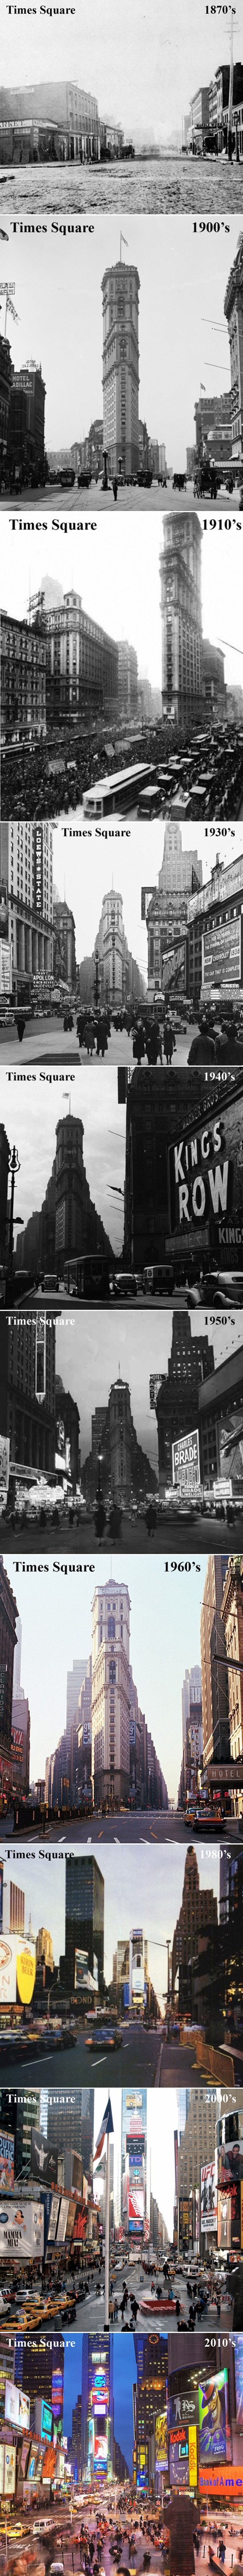 NEKAD I SAD: Times Square kroz 140 godina